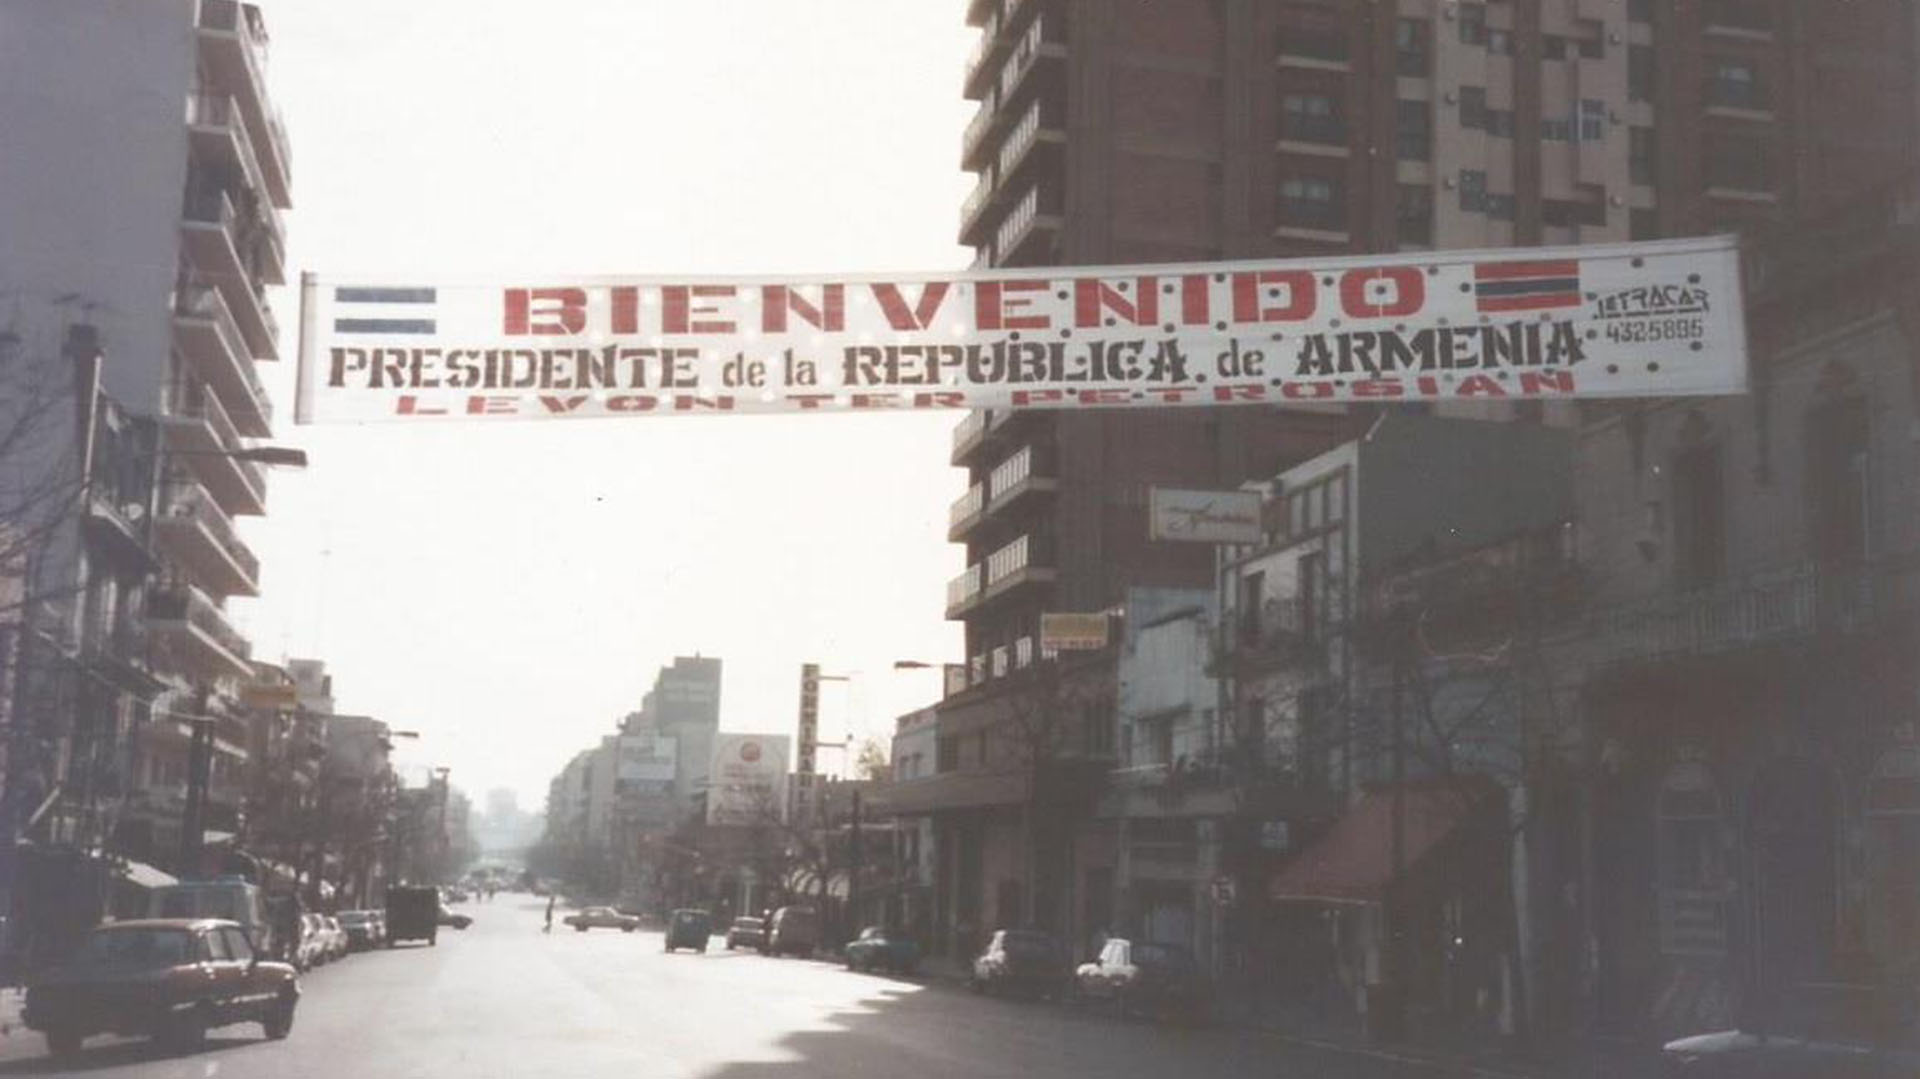 Una pancarta de bienvenida para el presidente armenio Levon Ter-Petrossian durante su visita a Argentina en 1992